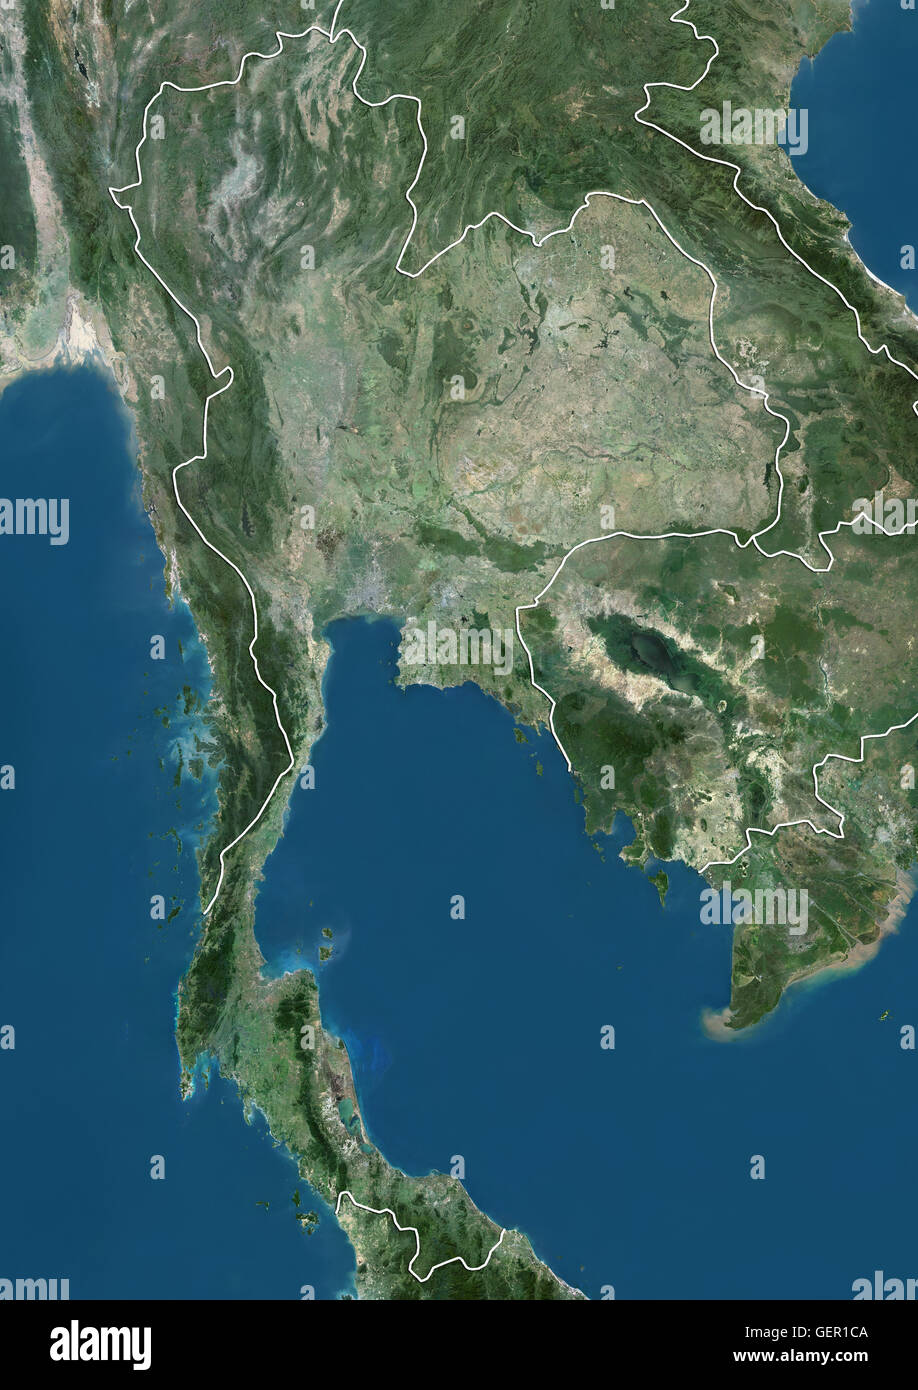 Satellitenansicht von Thailand (mit Ländergrenzen). Dieses Bild wurde aus Daten von Landsat-Satelliten erworben erstellt. Stockfoto